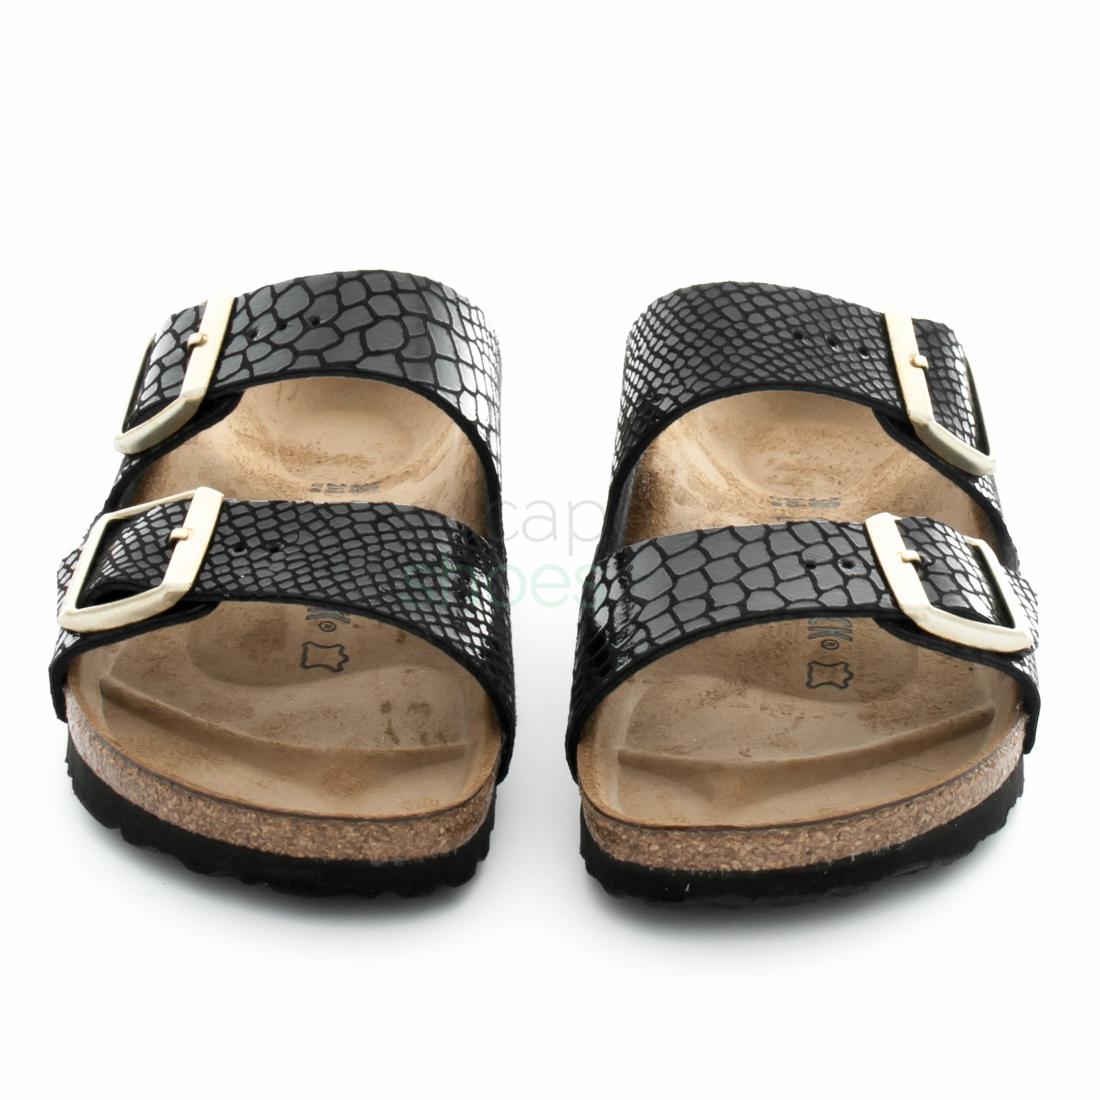 shiny birkenstock sandals